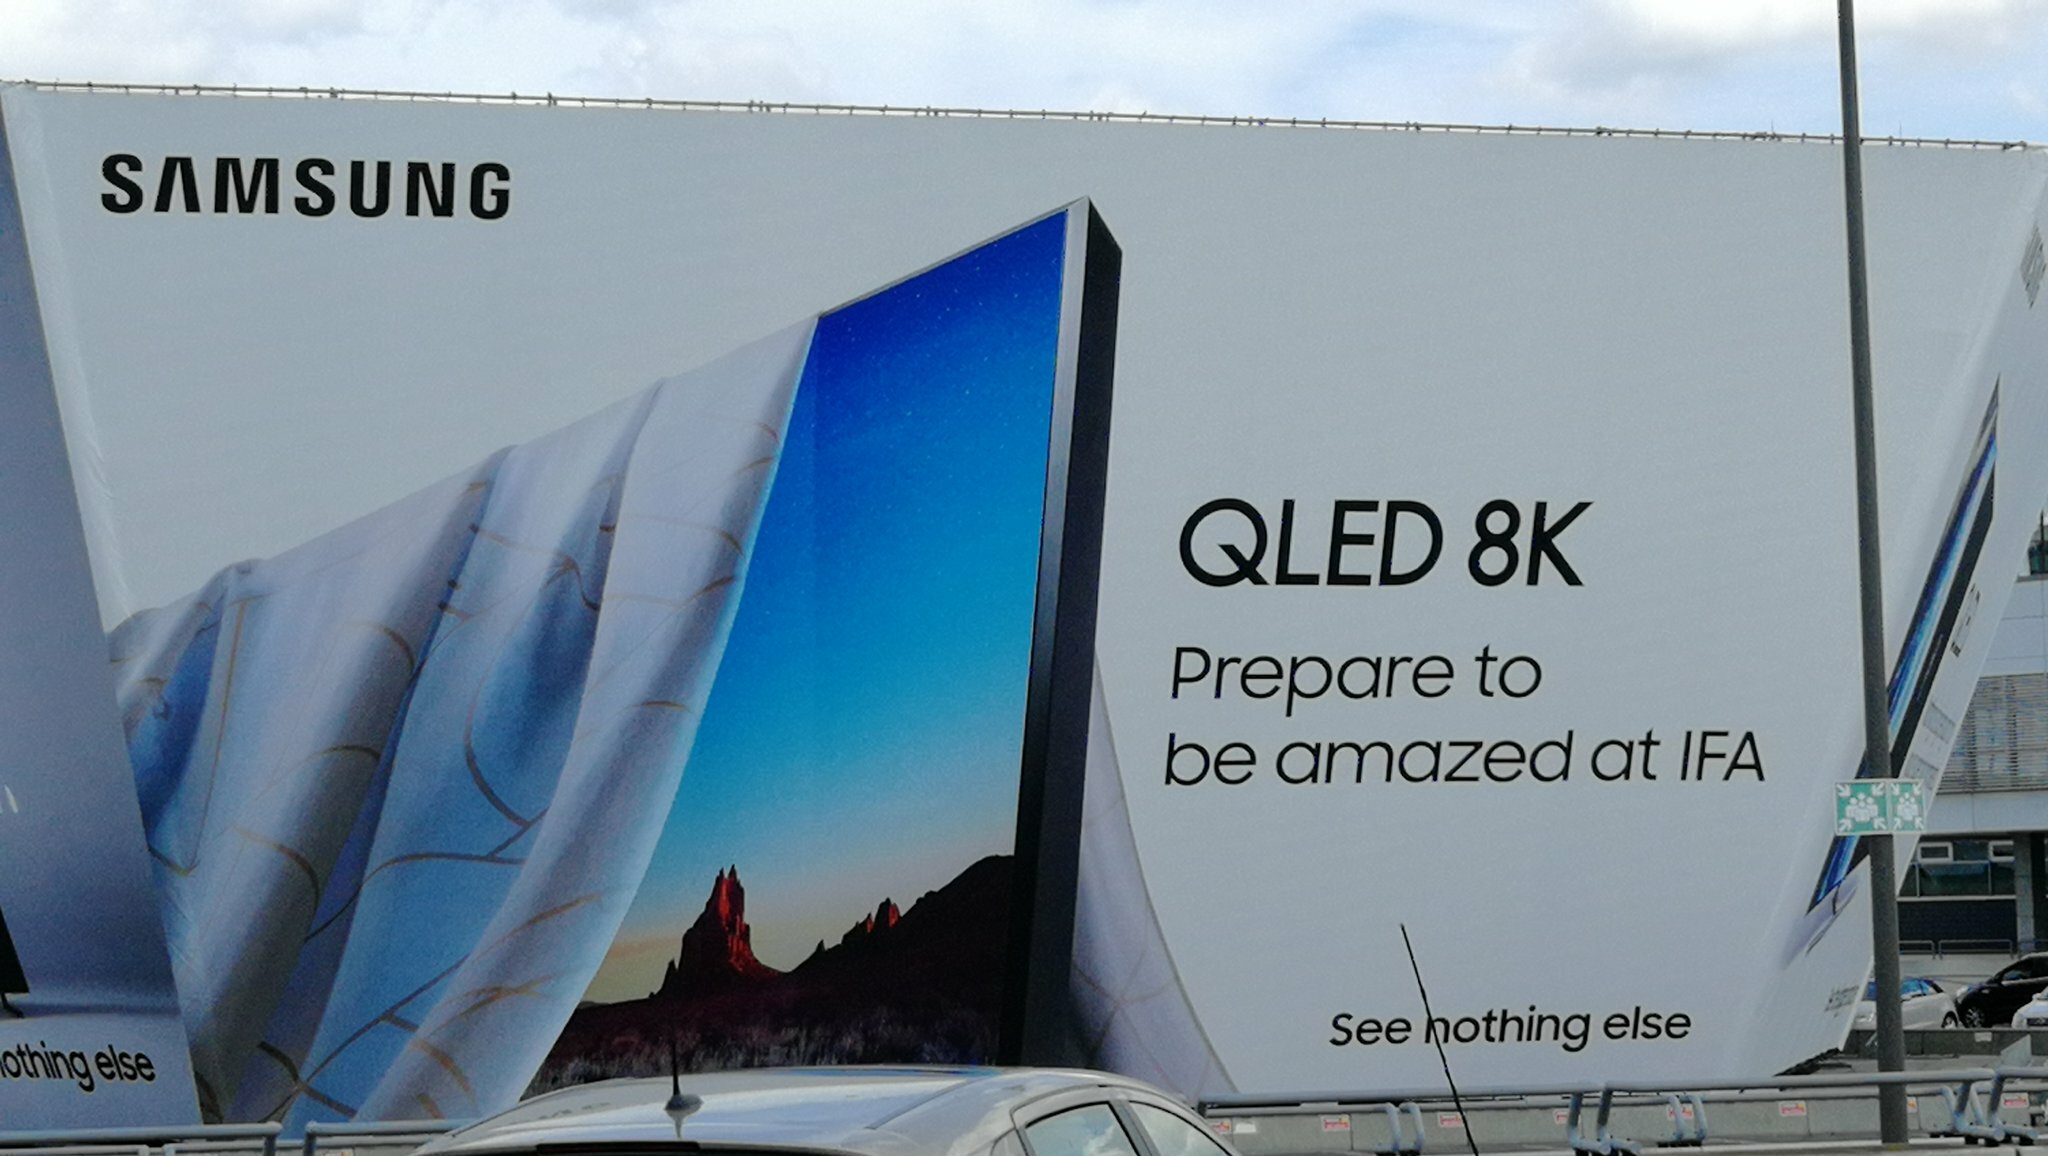 Samsung: An 8K TV